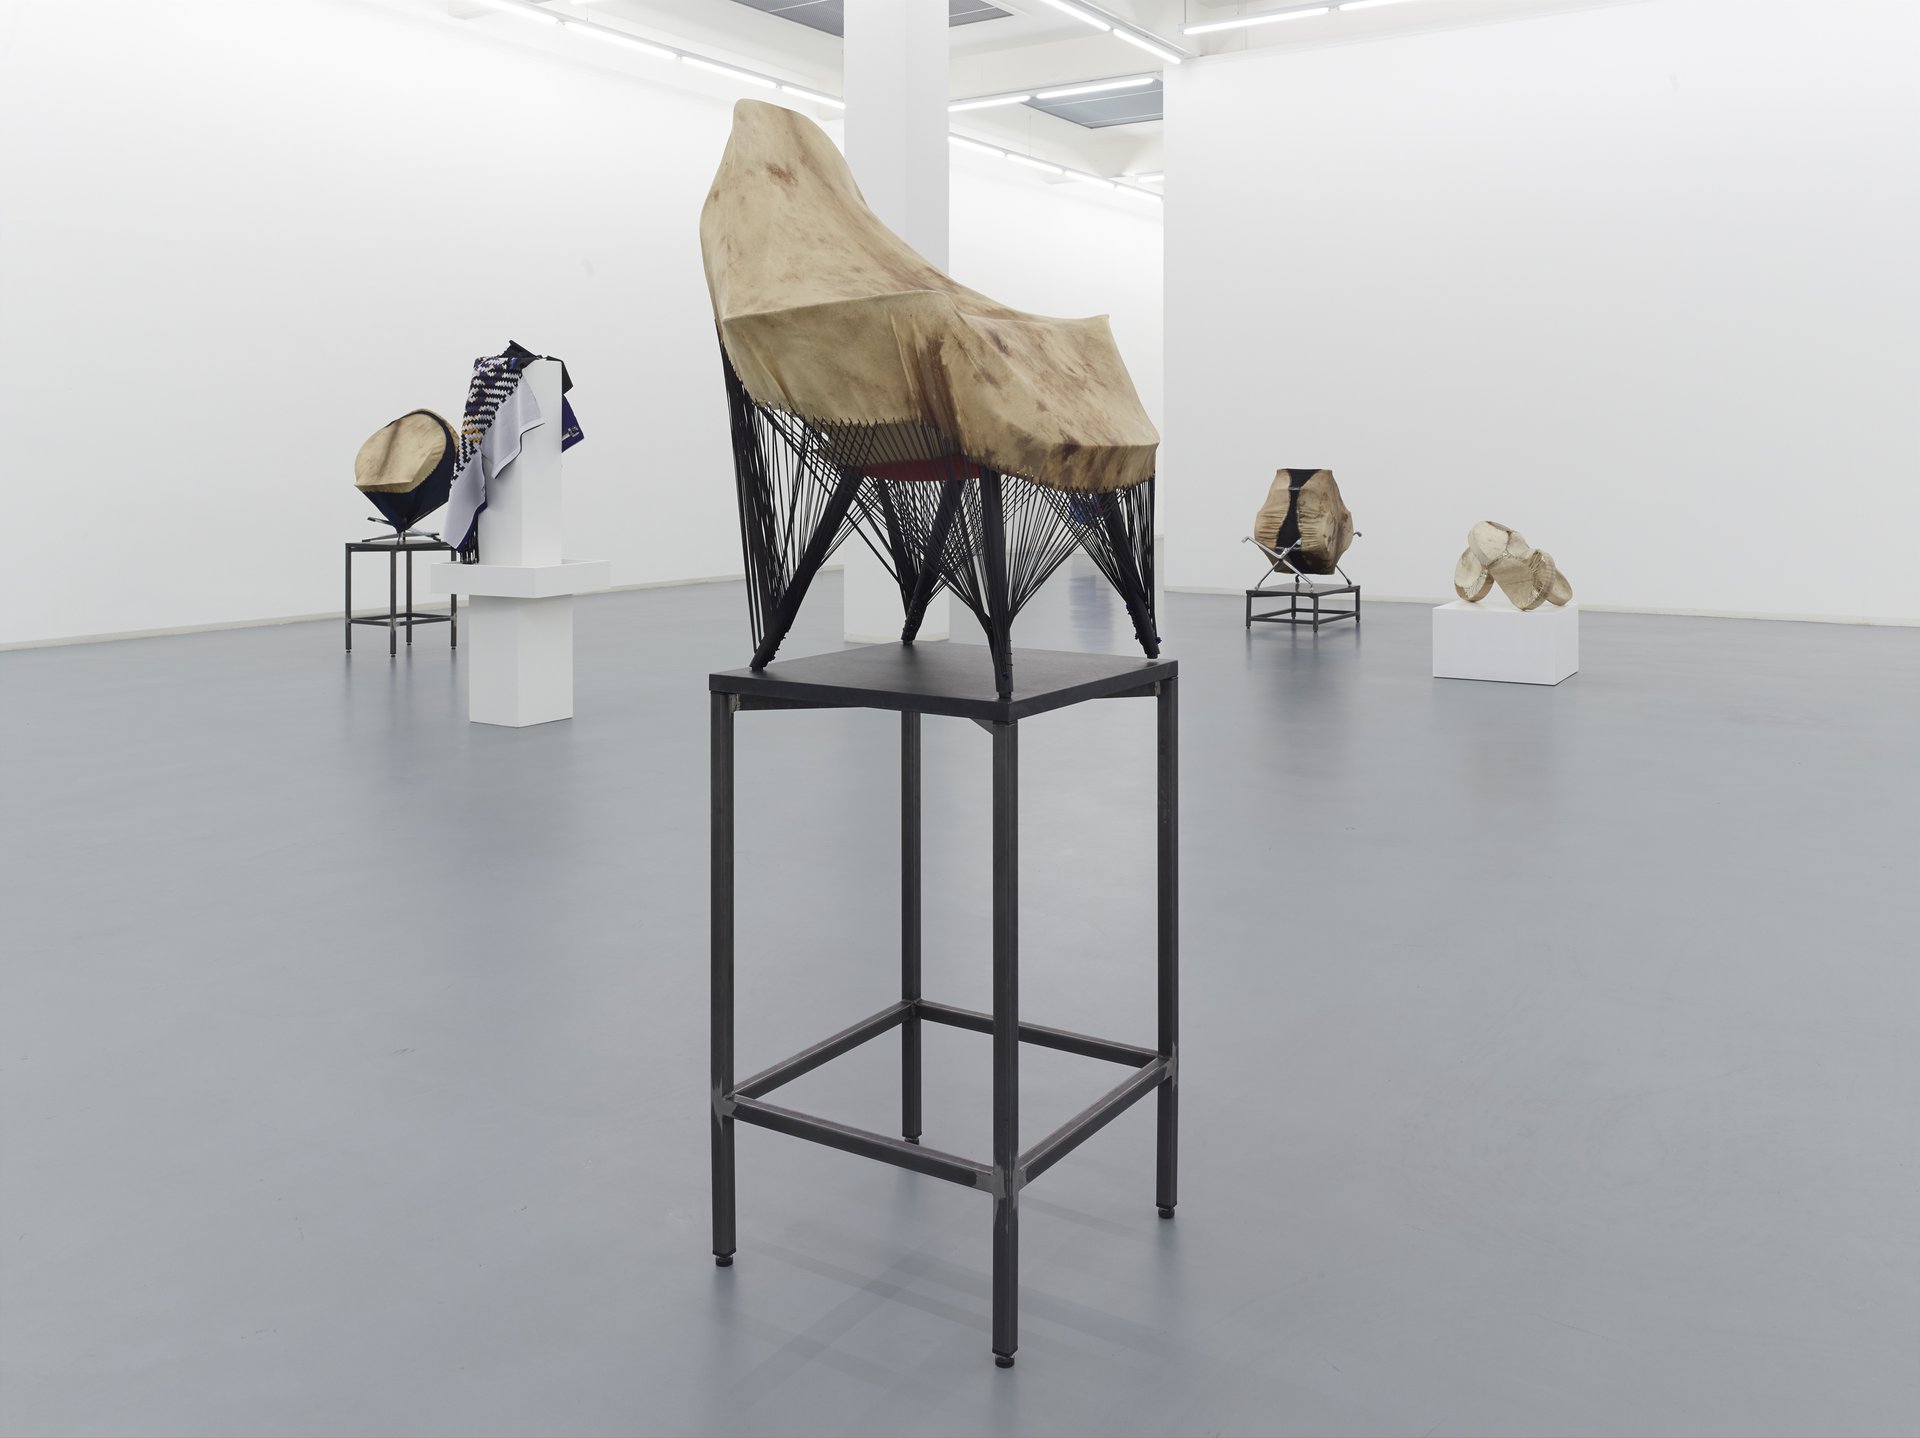 Brian Jungen, Installation view, 2013, Bonner Kunstverein. Photo: Simon Vogel